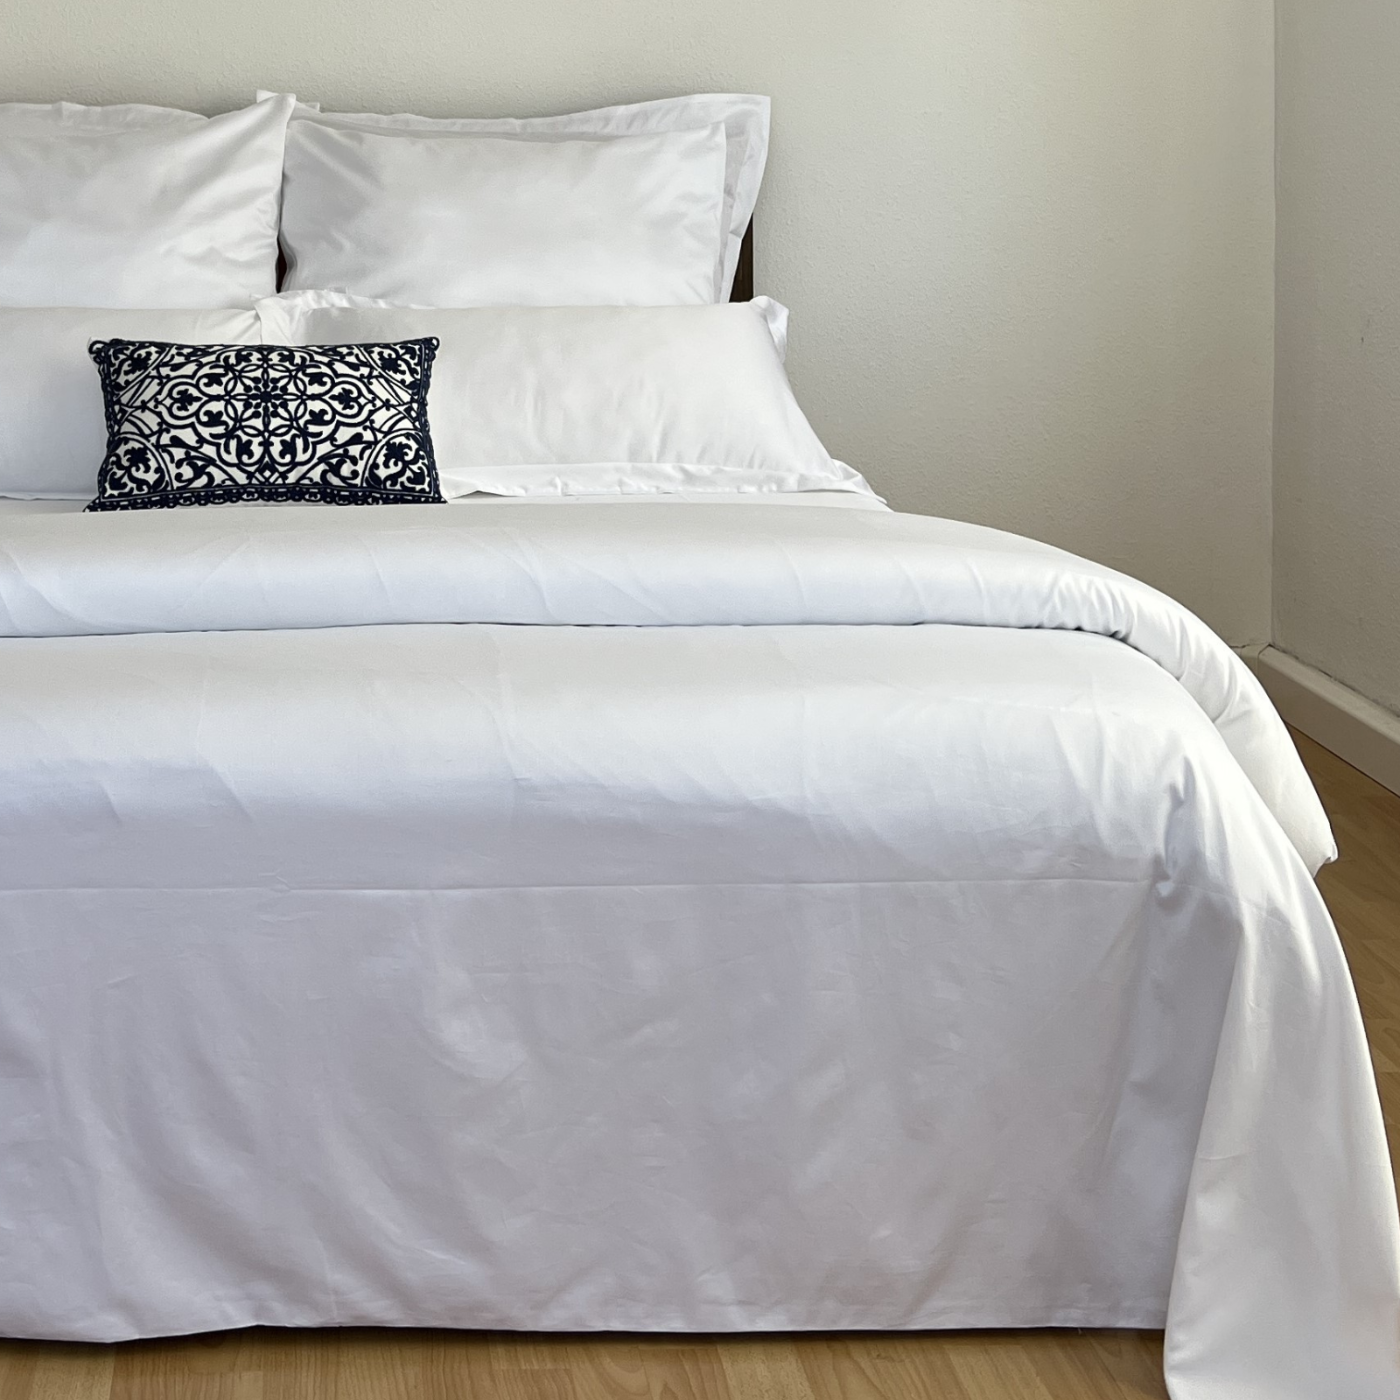 Ein Bett mit weißen Laken und Kissen, das einen Hauch von Luxus verströmt.